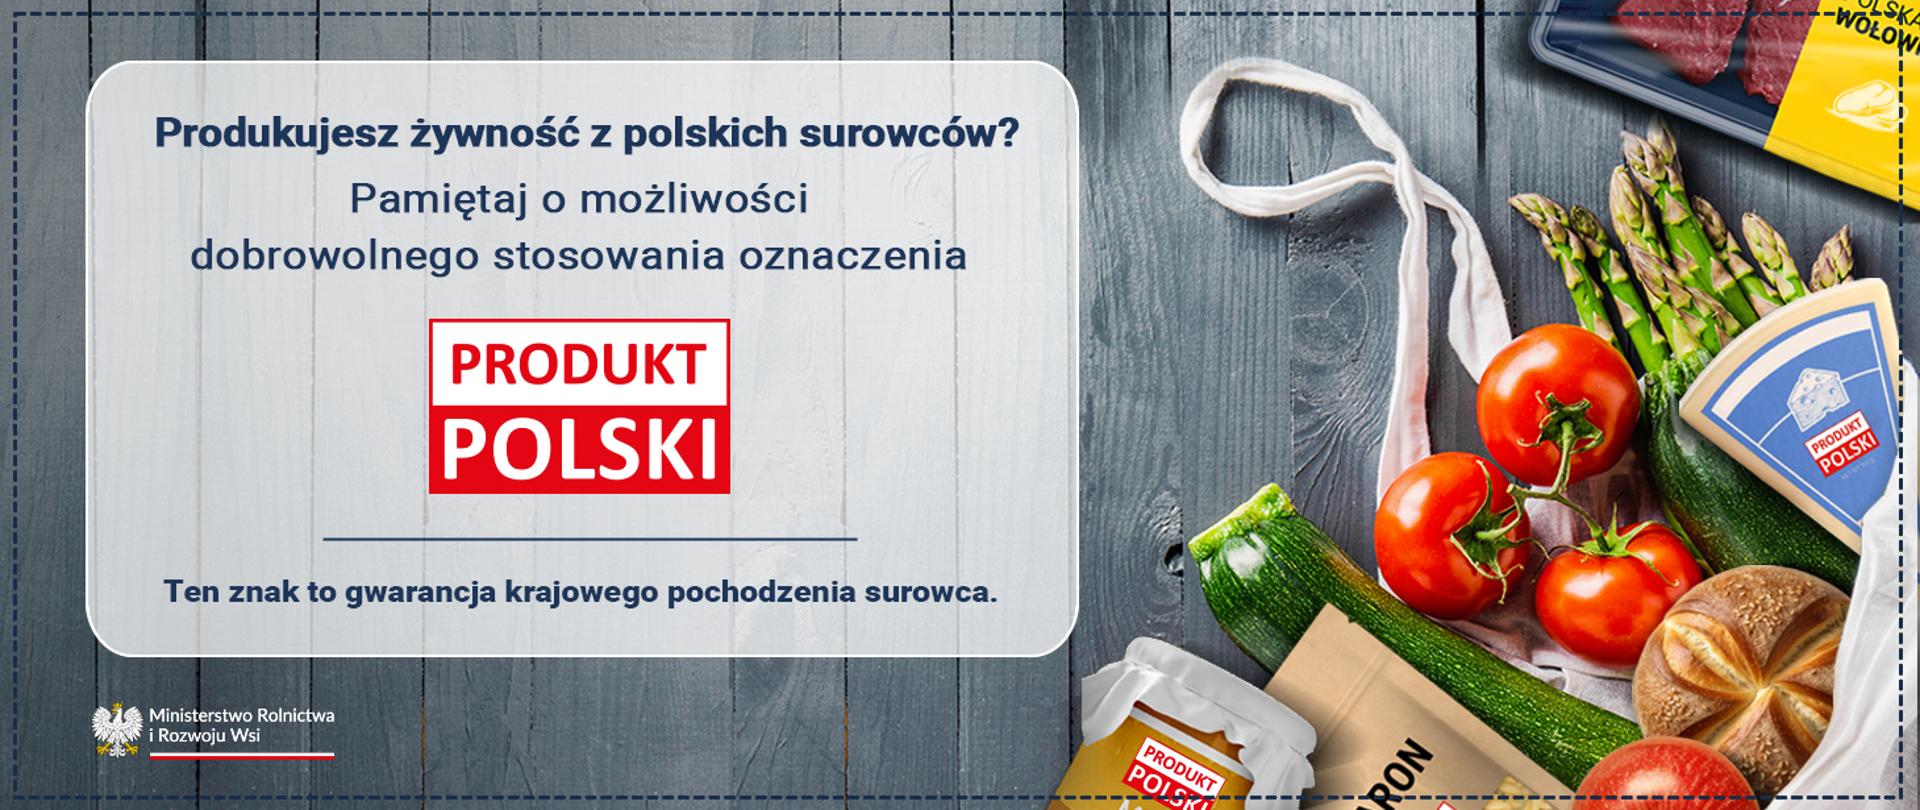 Produkt Polski - gwarancja krajowego pochodzenia surowca